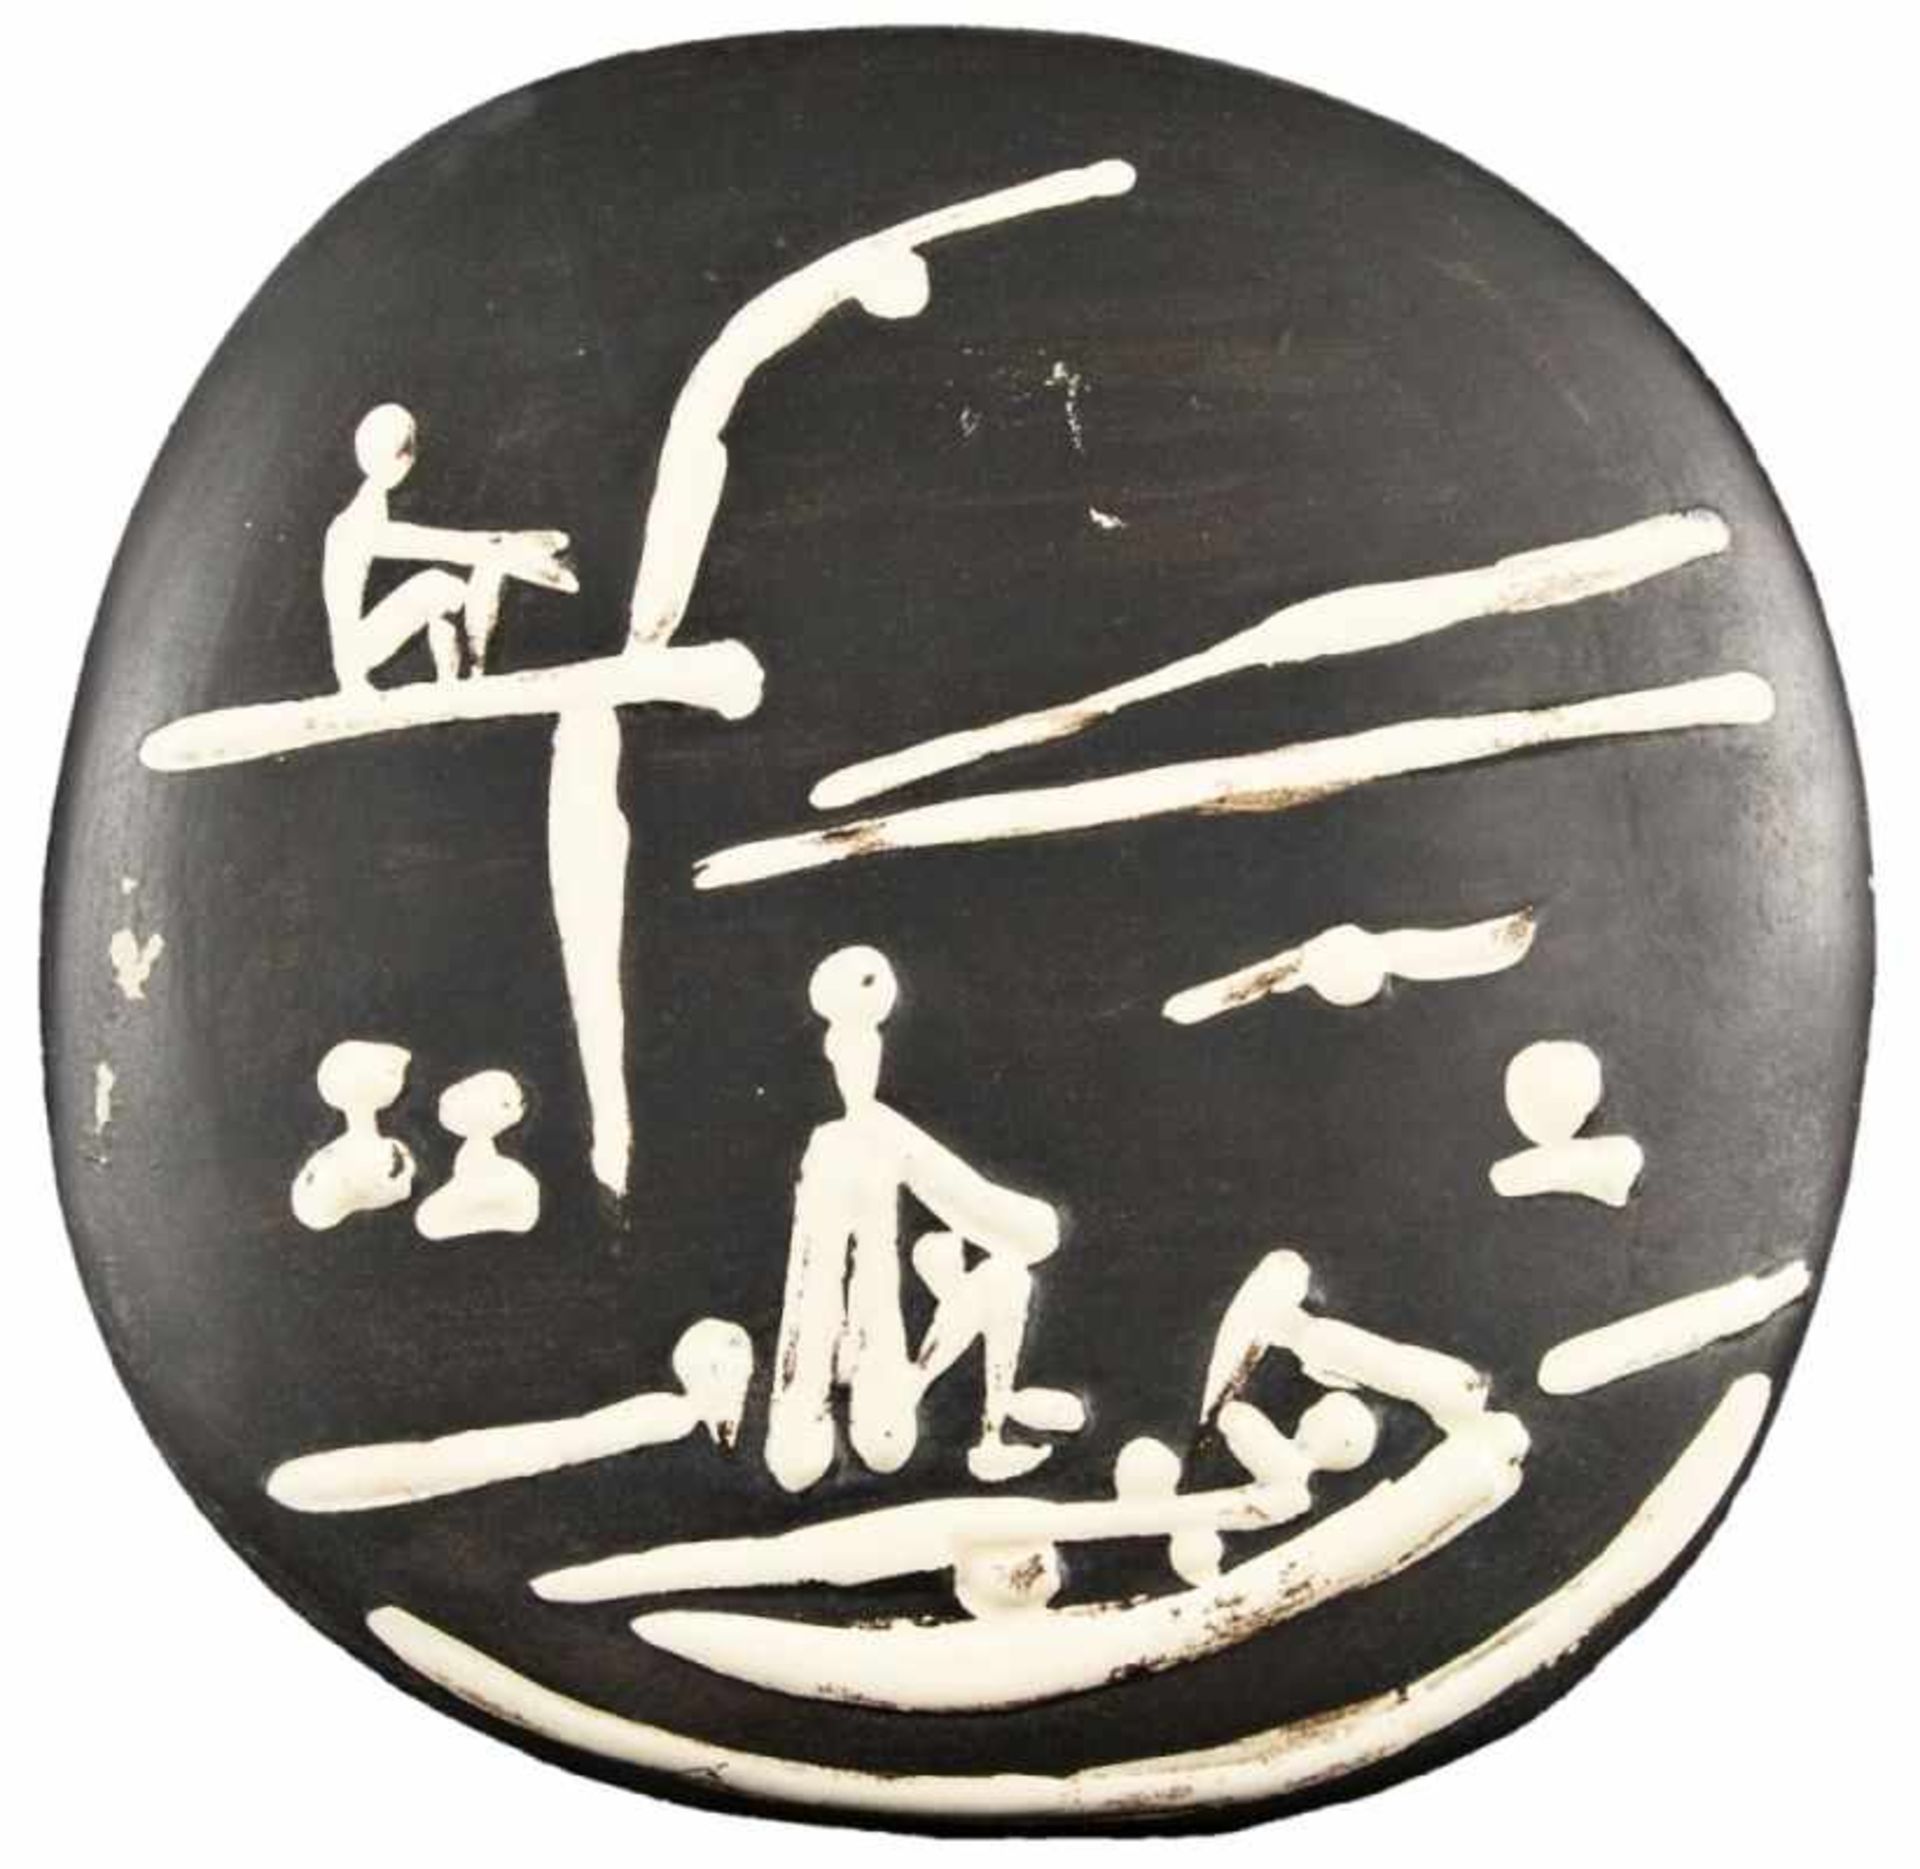 PABLO PICASSO(1881 MALAGA - 1973 MOUGINS)STRANDSZENE, 1956Wandteller, weißes Steingut, schwarz